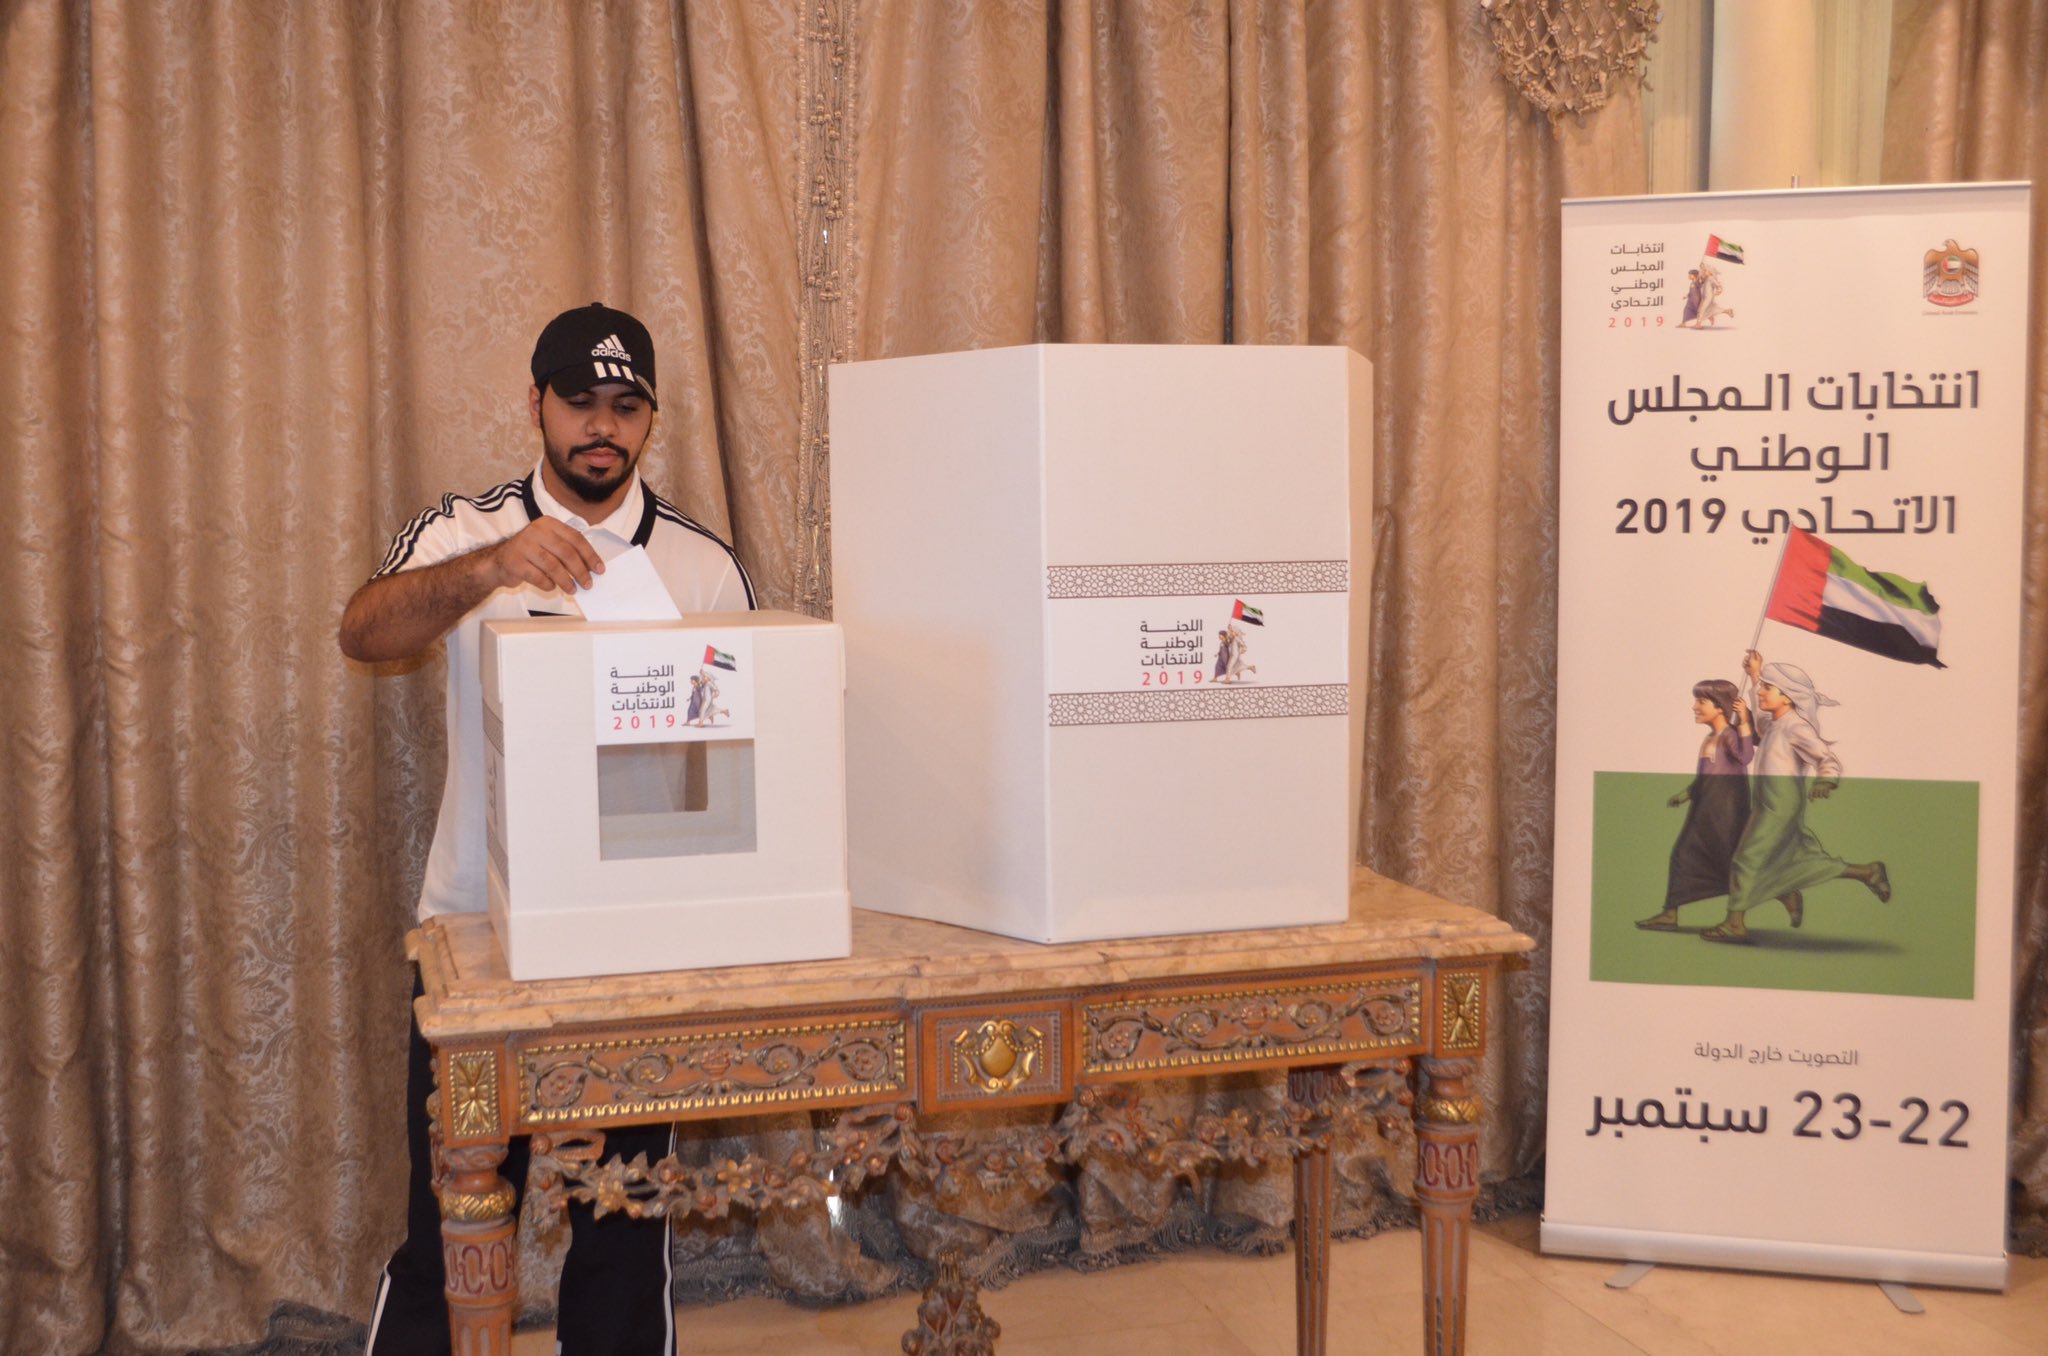 اماراتيون يصوتون فى المجلس الوطنى الاتحادى لاختيار ممثليهم بين 479 مرشح